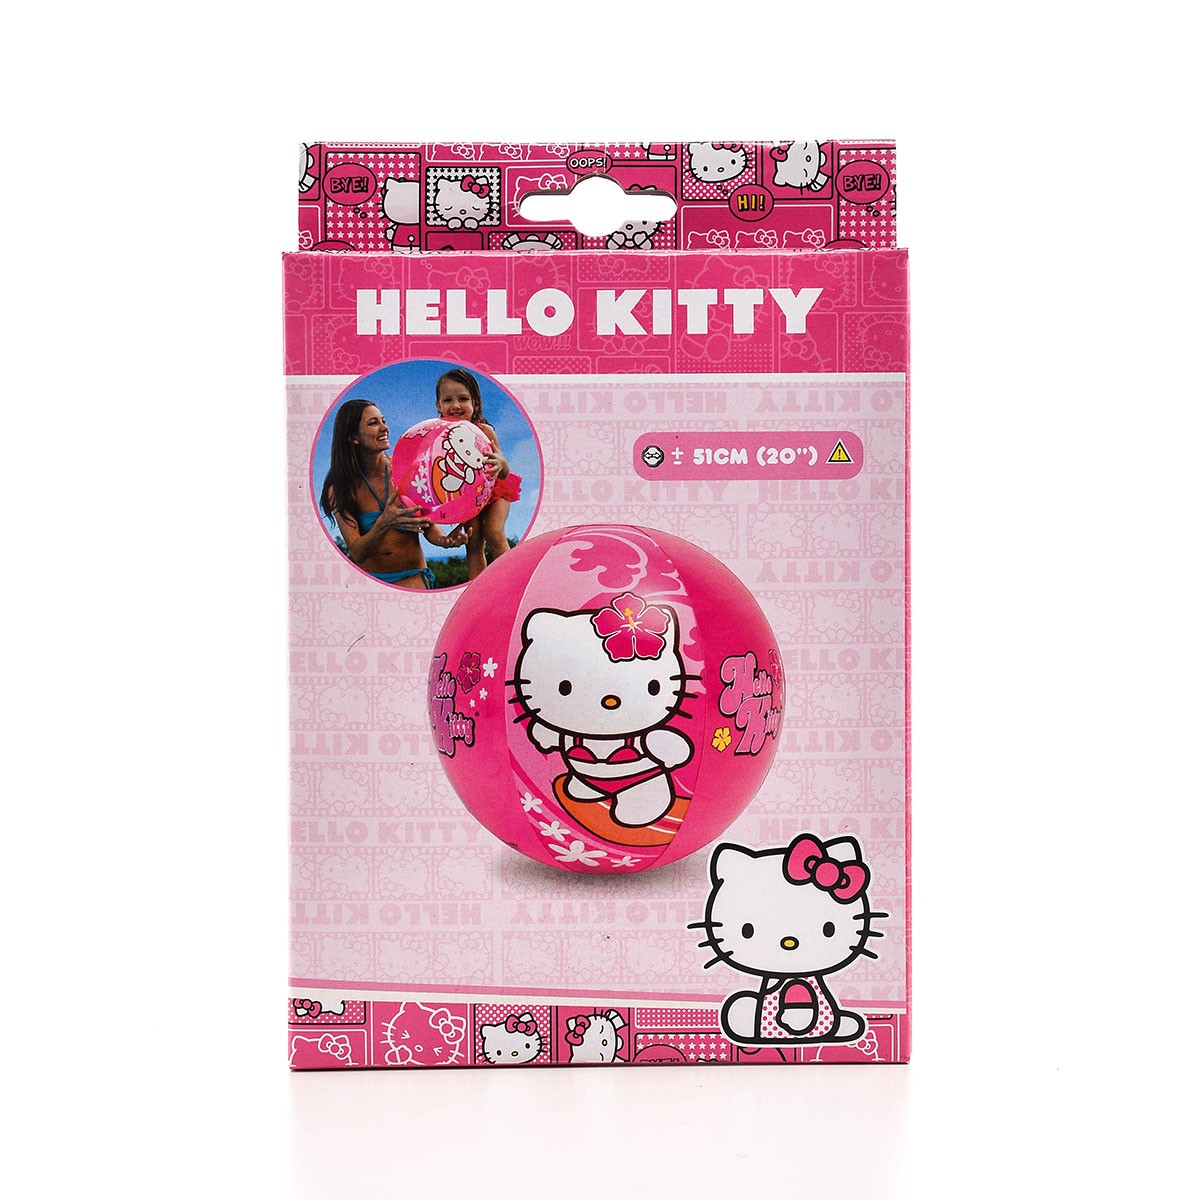 Пляжный мяч 51см "Hello Kitty" Sanrio, от 3 лет, Intex 58026